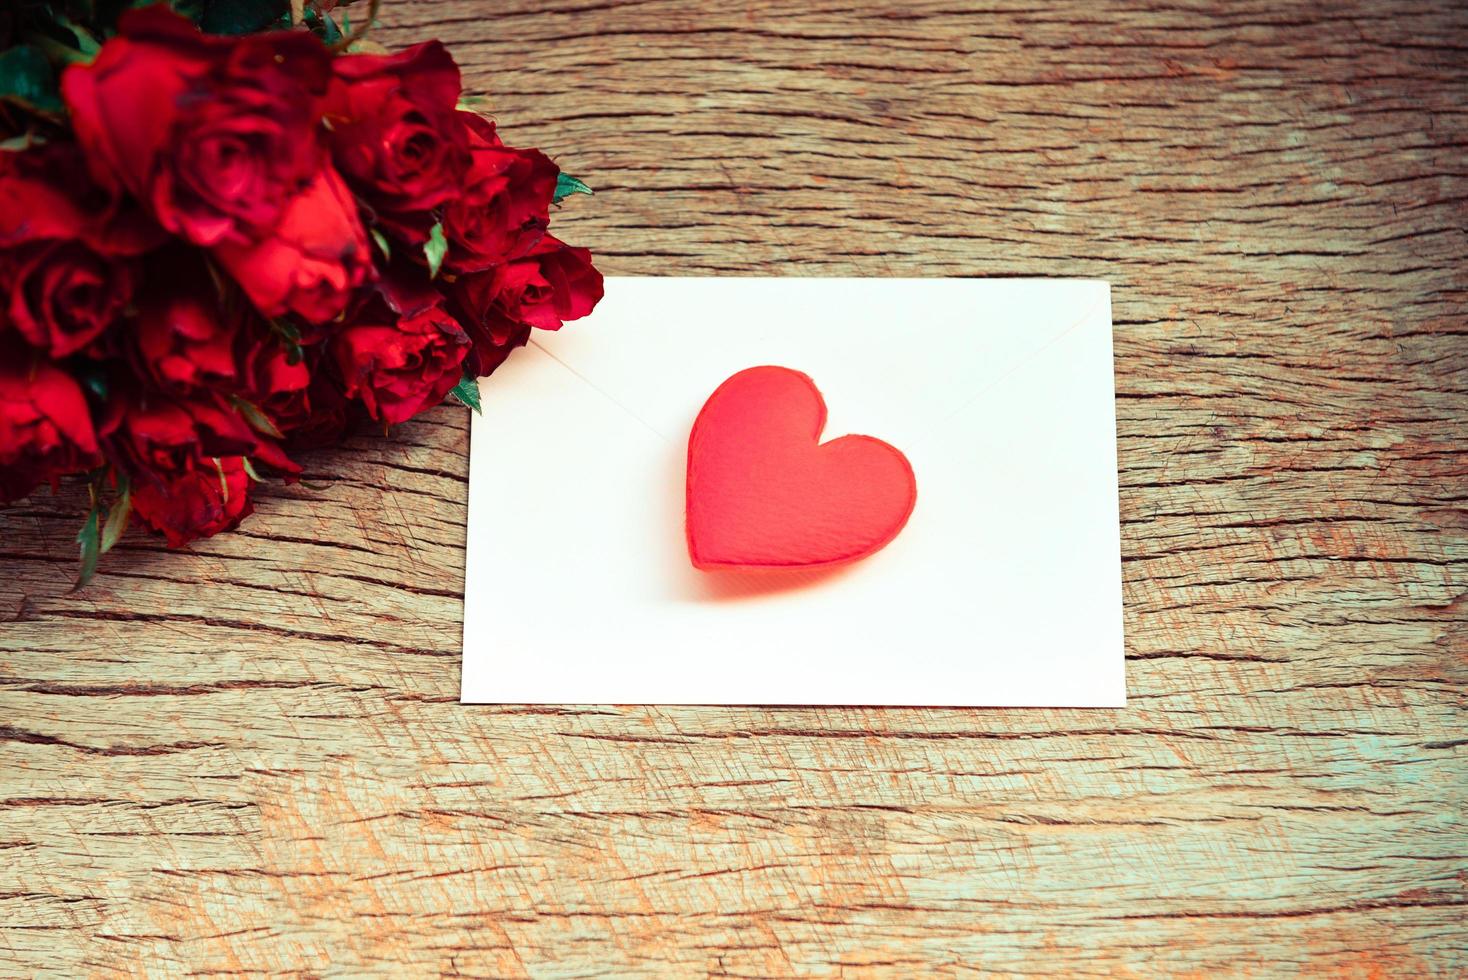 rosas vermelhas buquê de flores romântico amor dia dos namorados cartão envelope carta correspondência com coração vermelho - cartão de convite casamento com fundo de madeira foto